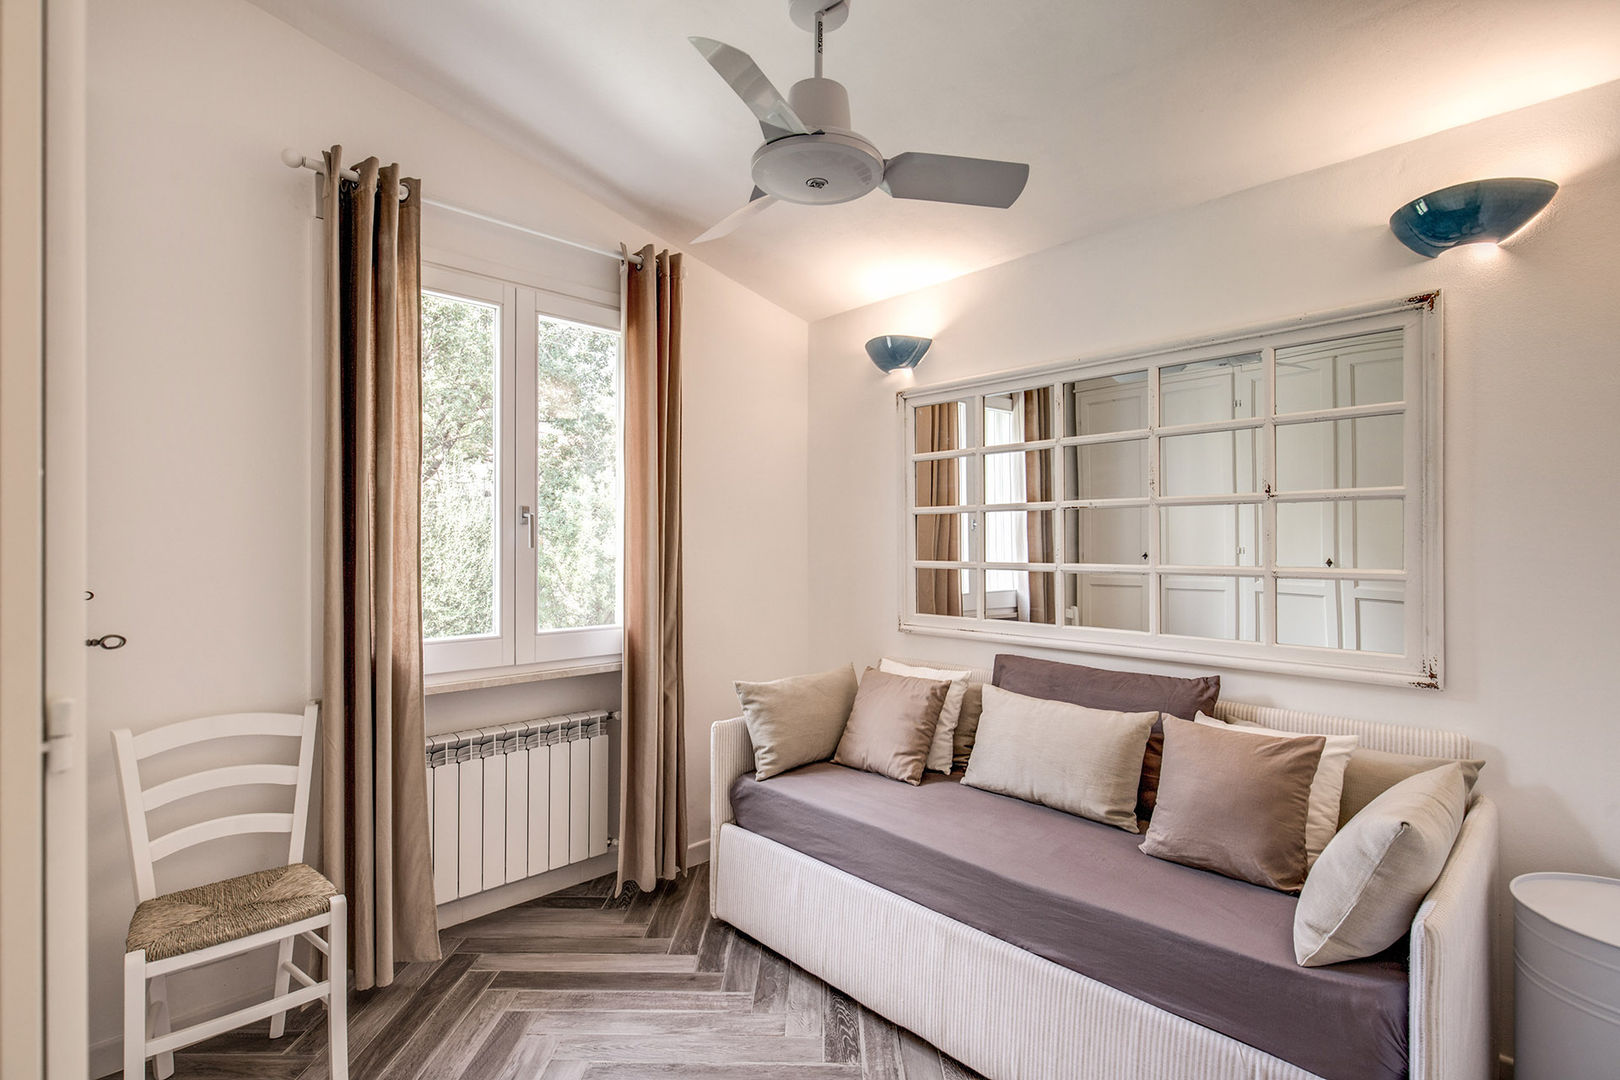 VILLINO (PORTO ERCOLE - GR), Gian Paolo Guerra Design Gian Paolo Guerra Design Classic style bedroom